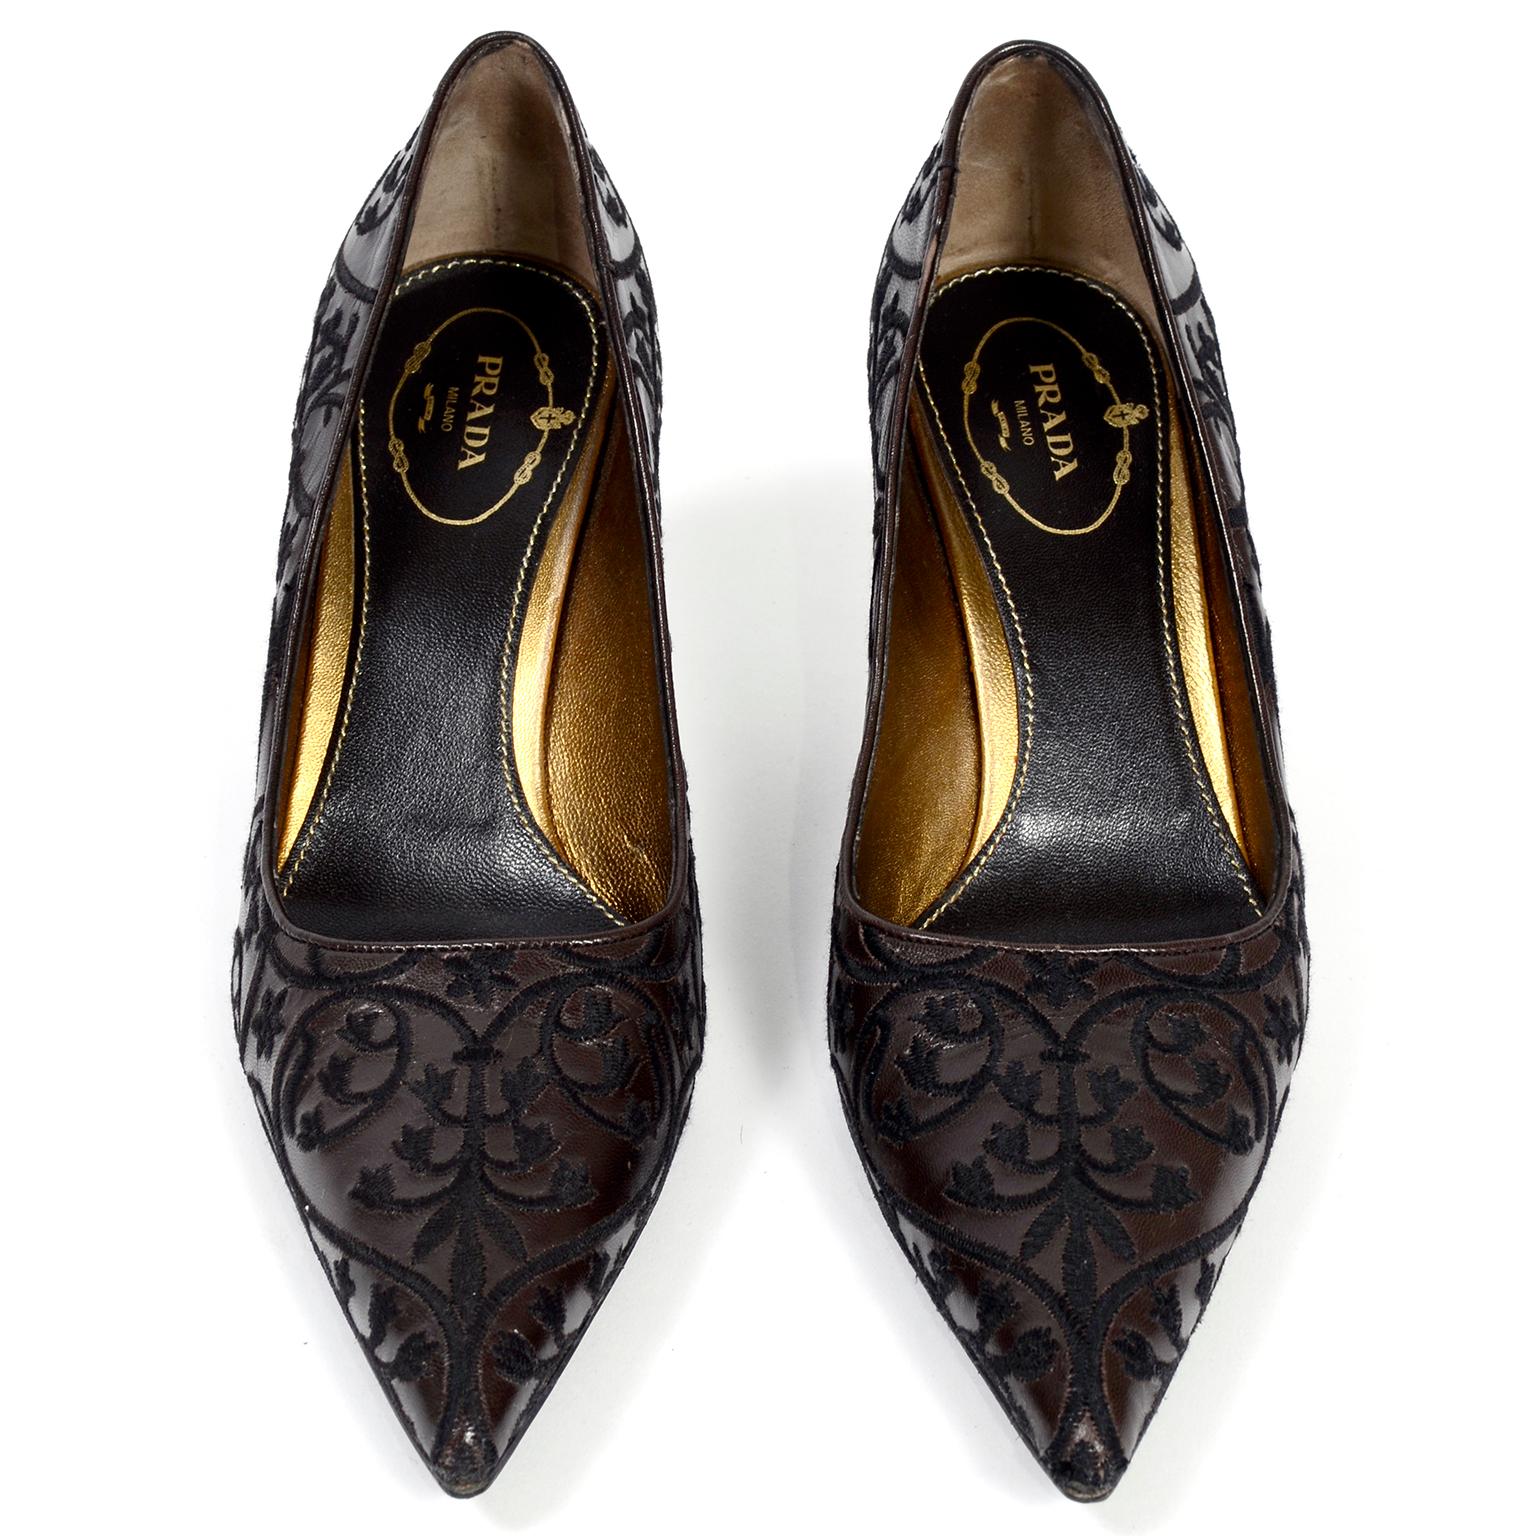 Chaussures Prada à talons brodés en cuir marron foncé, taille 37,5 L 3